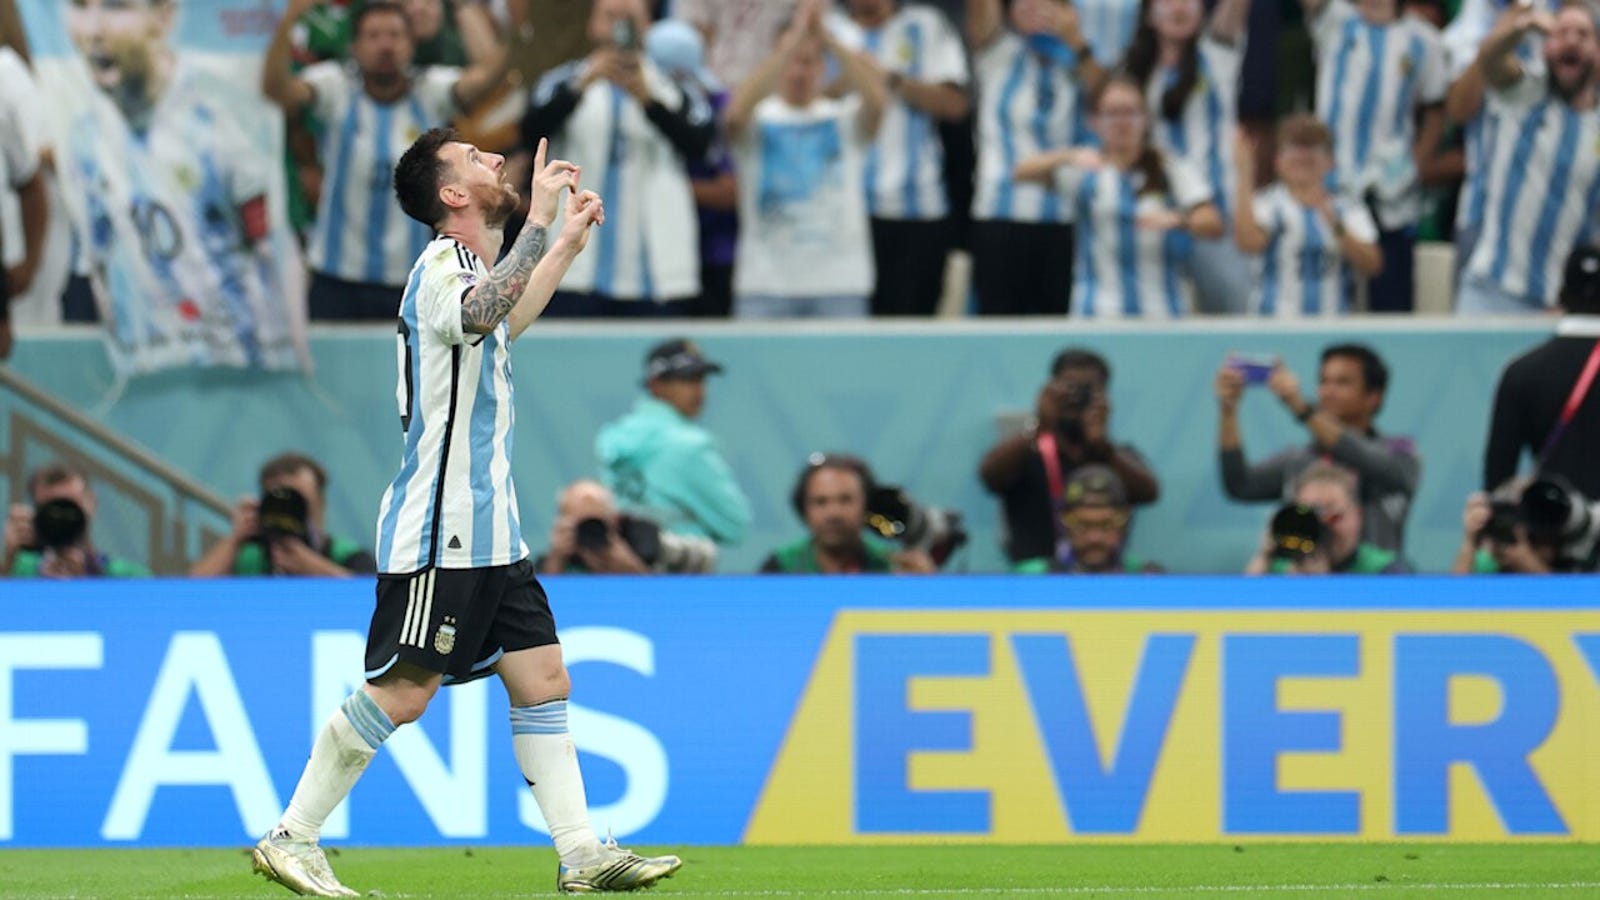 De Argentijn Lionel Messi scoort in de 64e minuut een doelpunt tegen Mexico